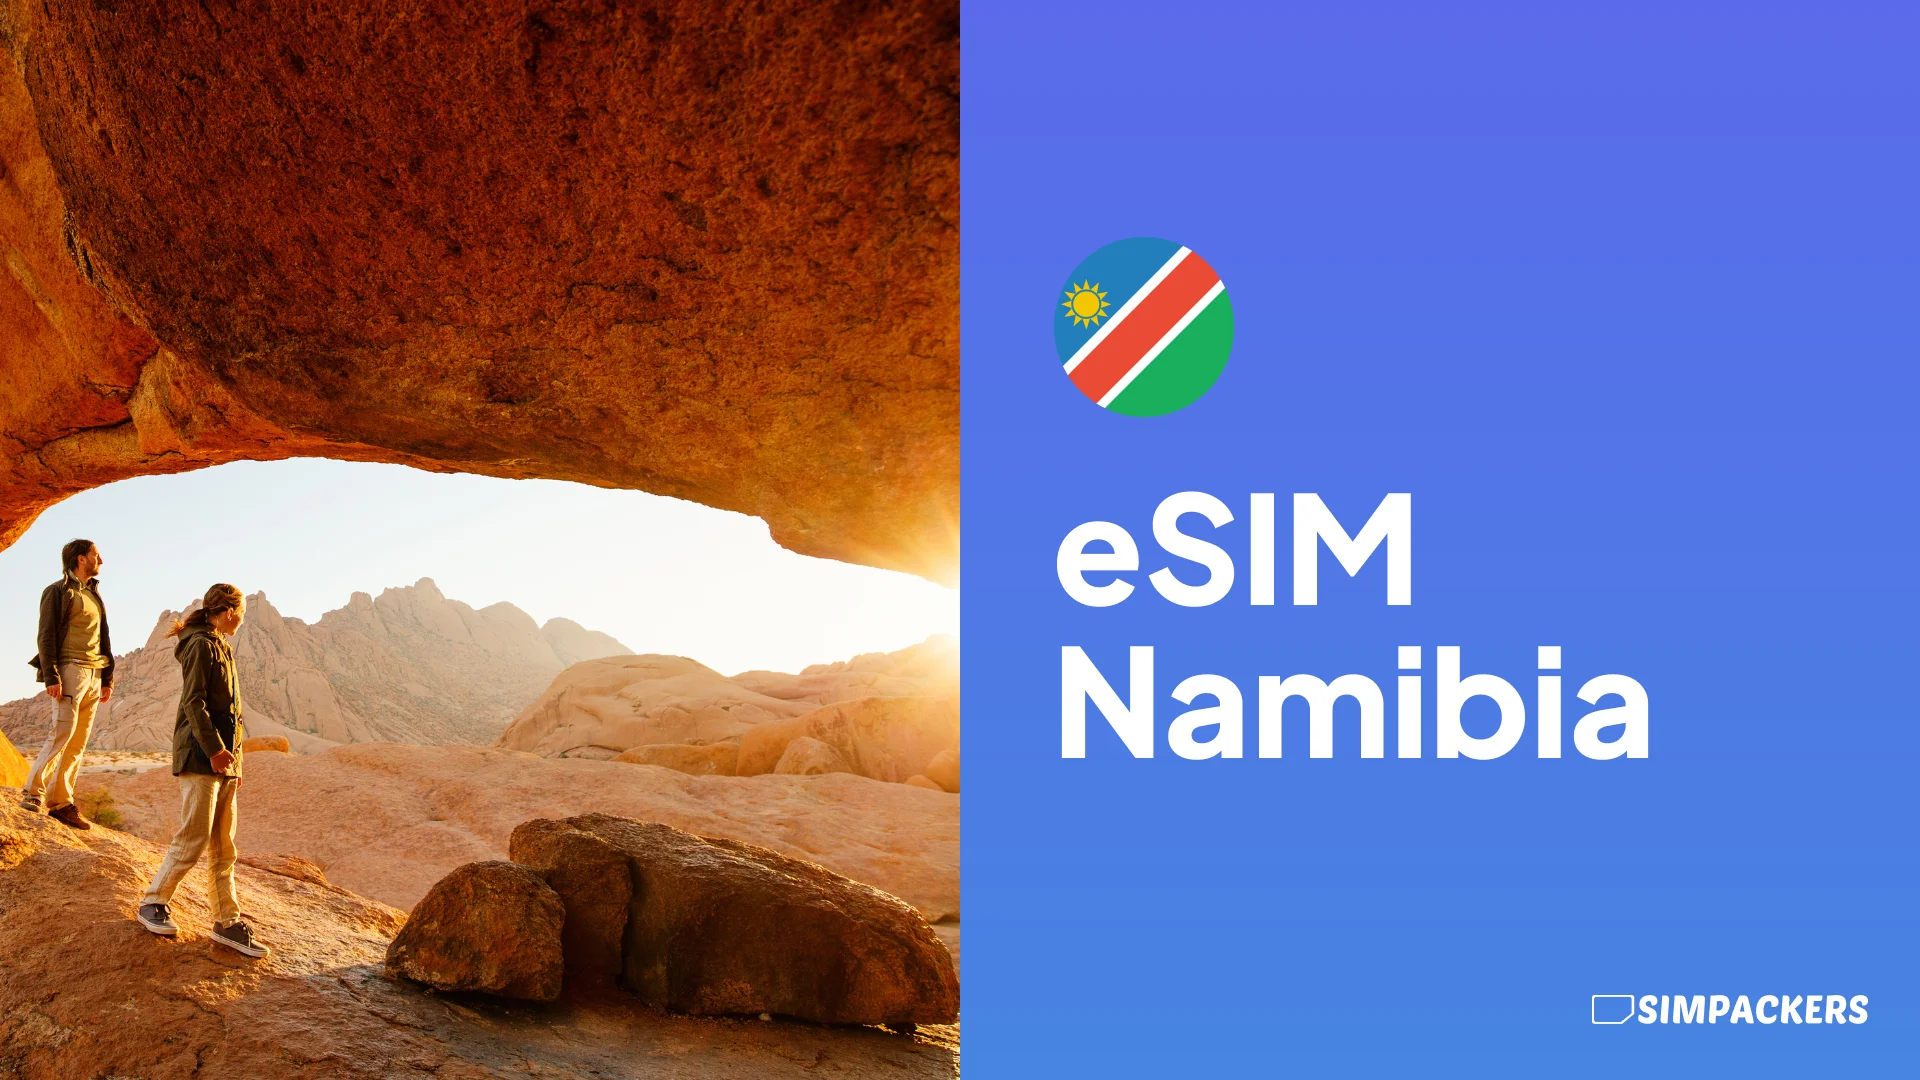 ES/FEATURED_IMAGES/esim-namibia.webp